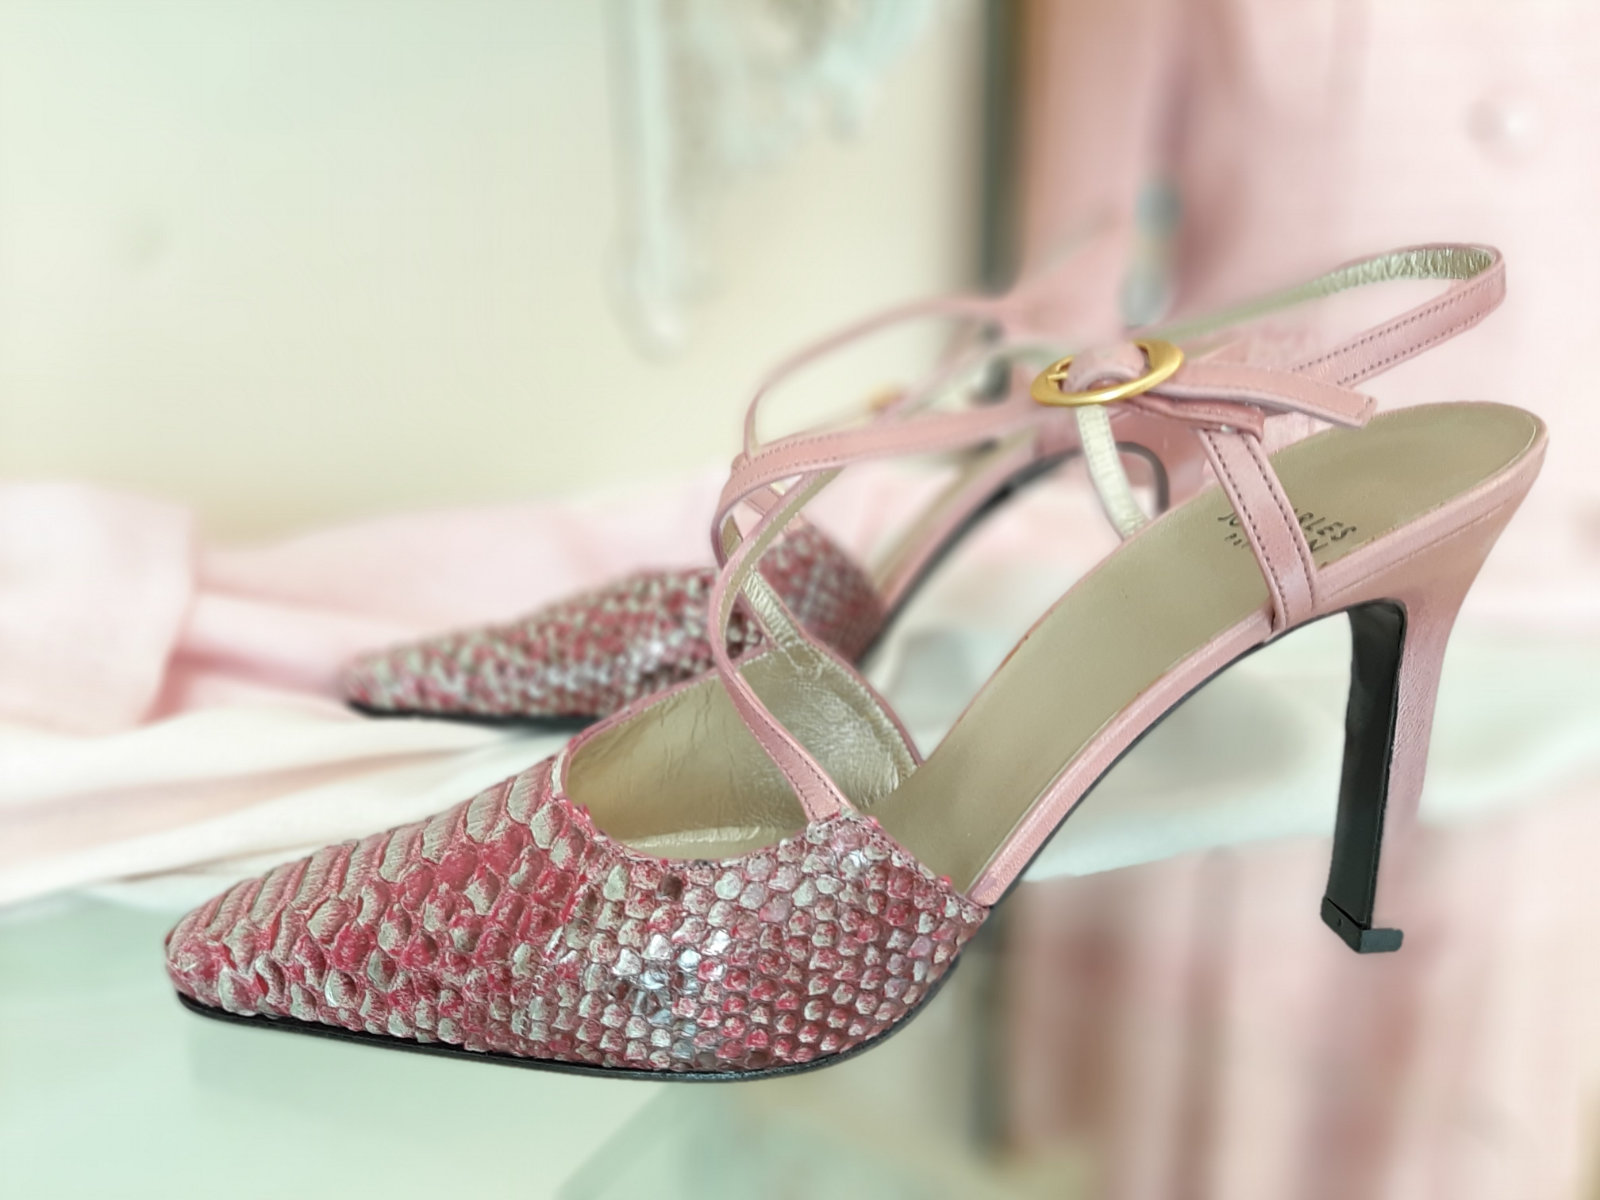 Schuhe von Charles Jourdan, in rosa und weiß, Größe 39, seitlich.